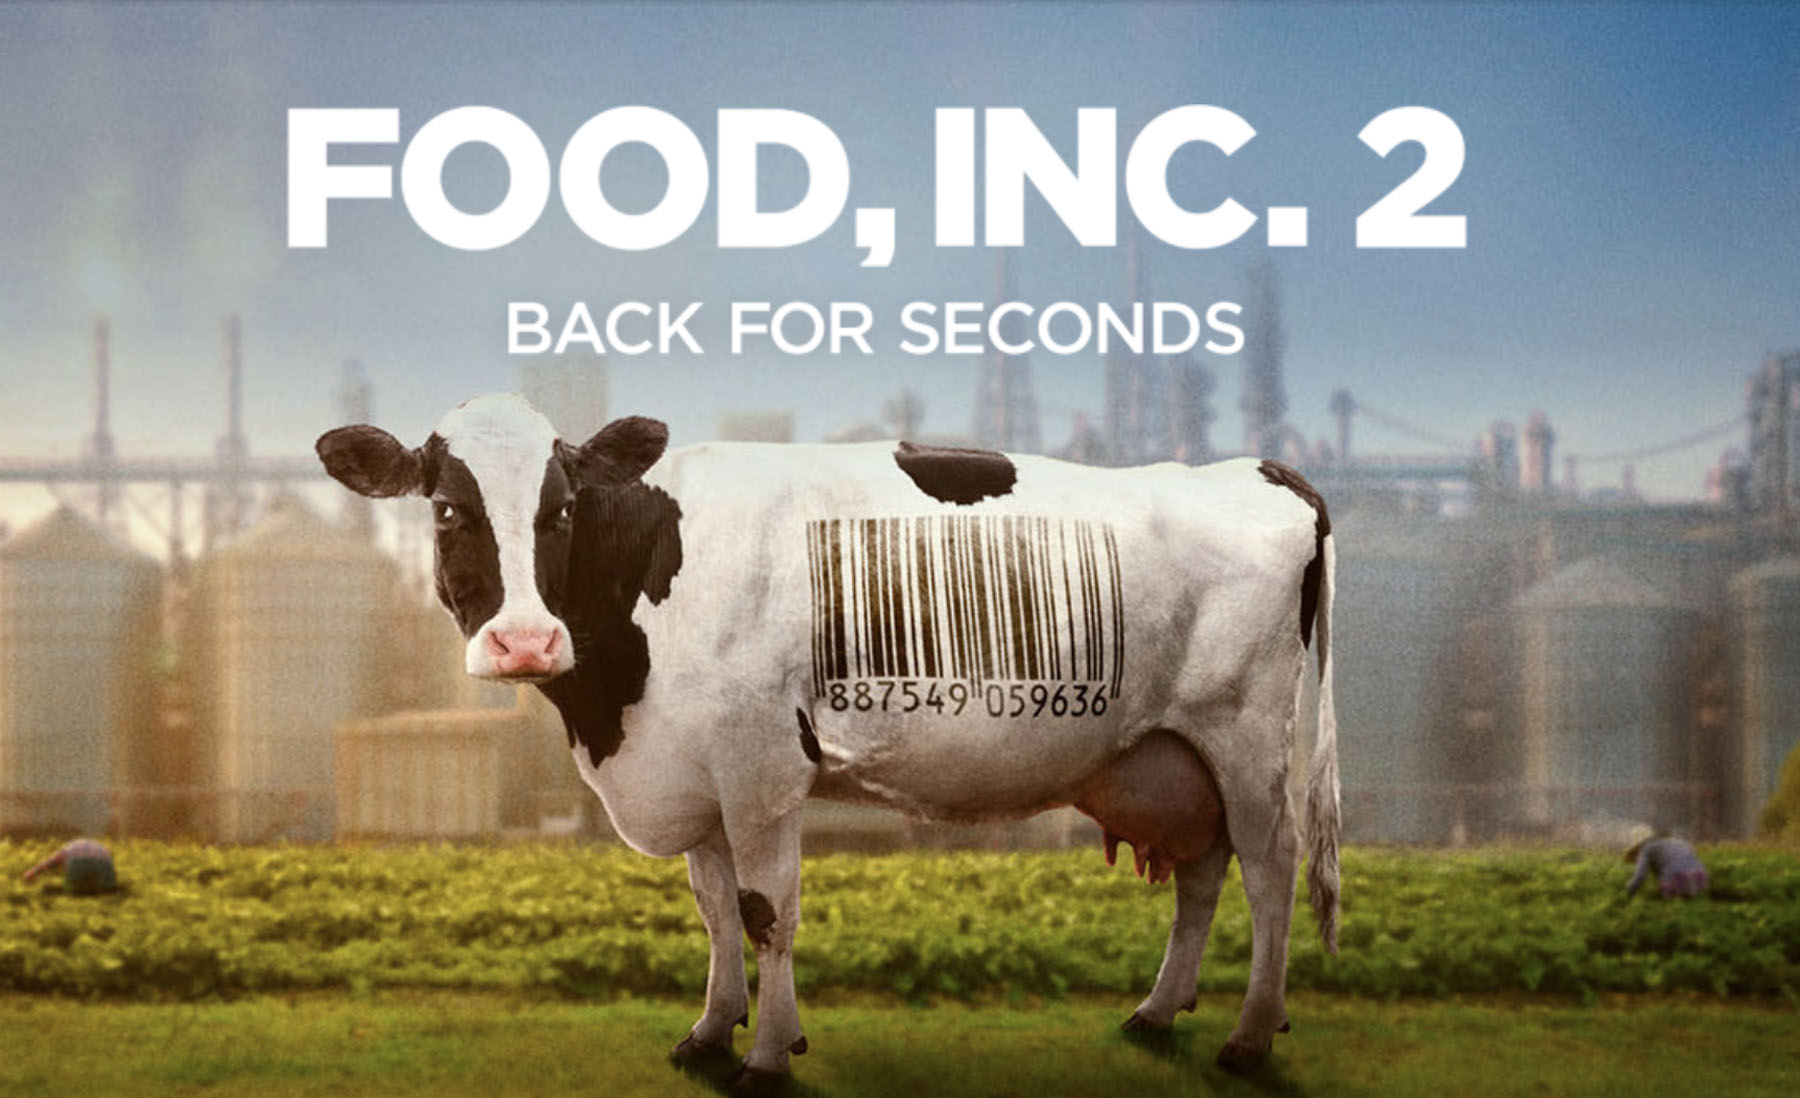 Promo slide for Food Inc 2